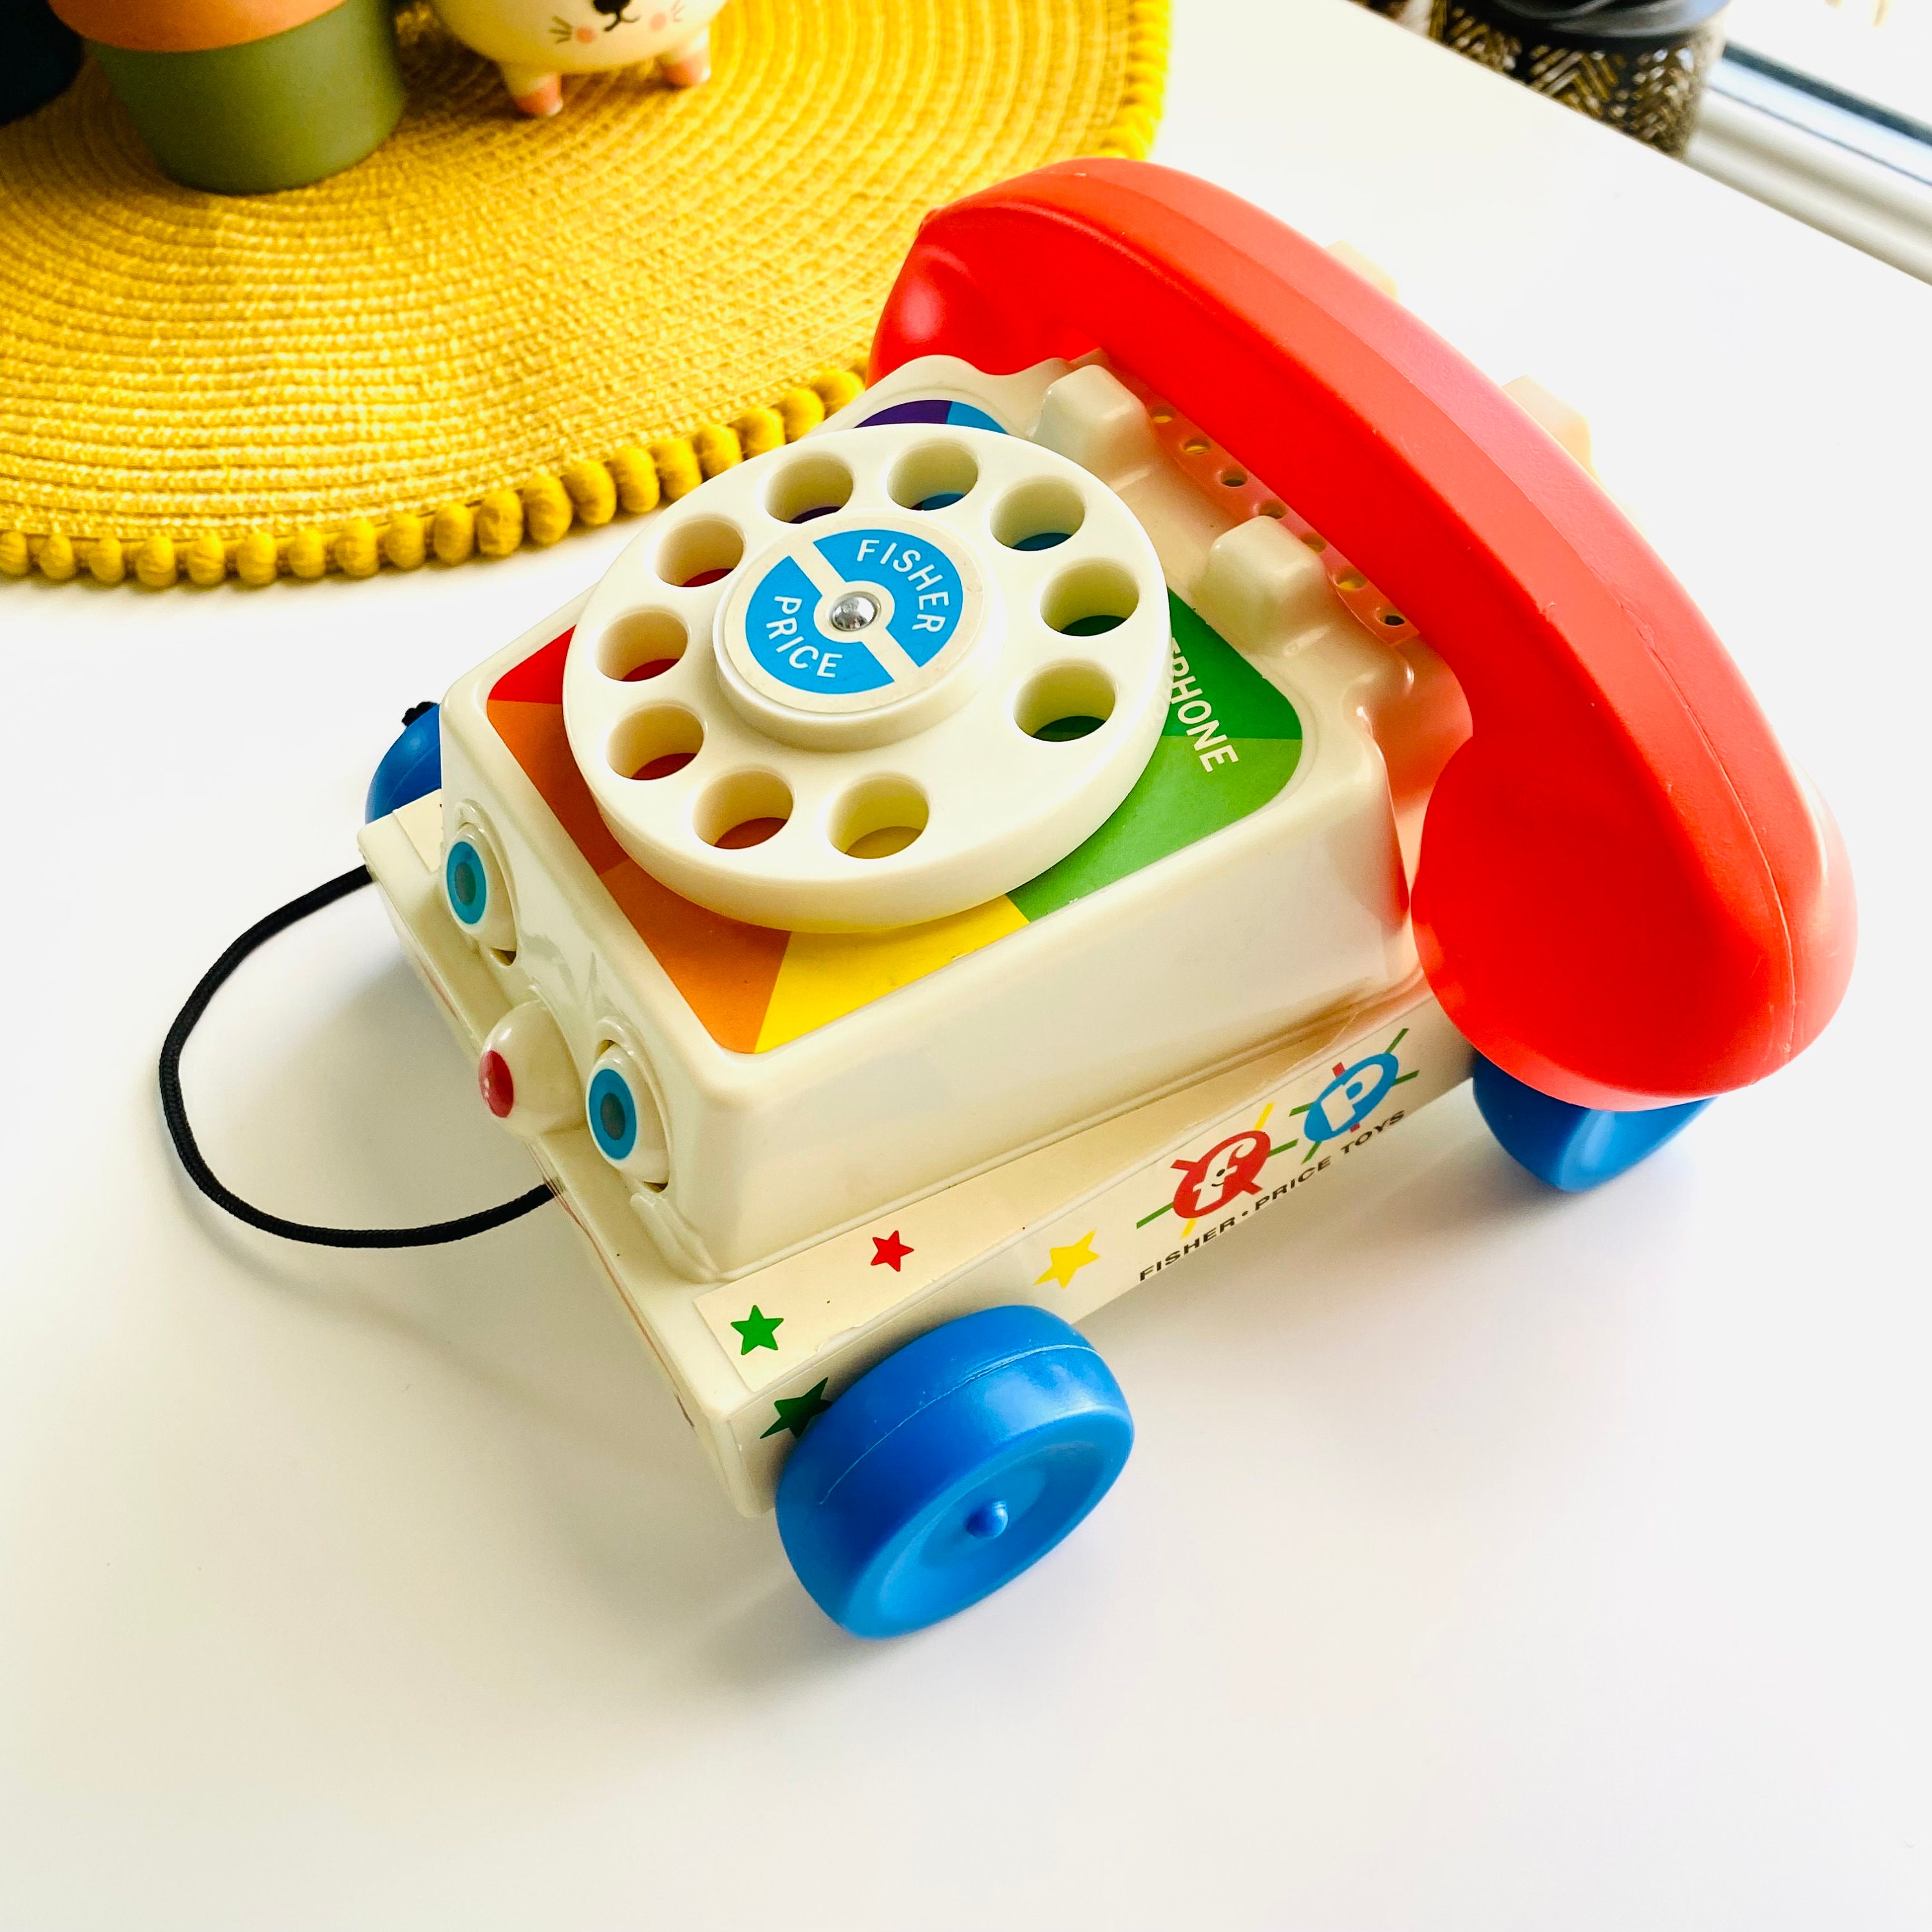 Fischer Preis Vintage Telefon Spielzeug, Chatter Retro Baby Schieben Kinder  Spielzeug 1960er Jahre Retro Haus so tun, als Kleinkind spielen Spielzeug  Toy Story - .de